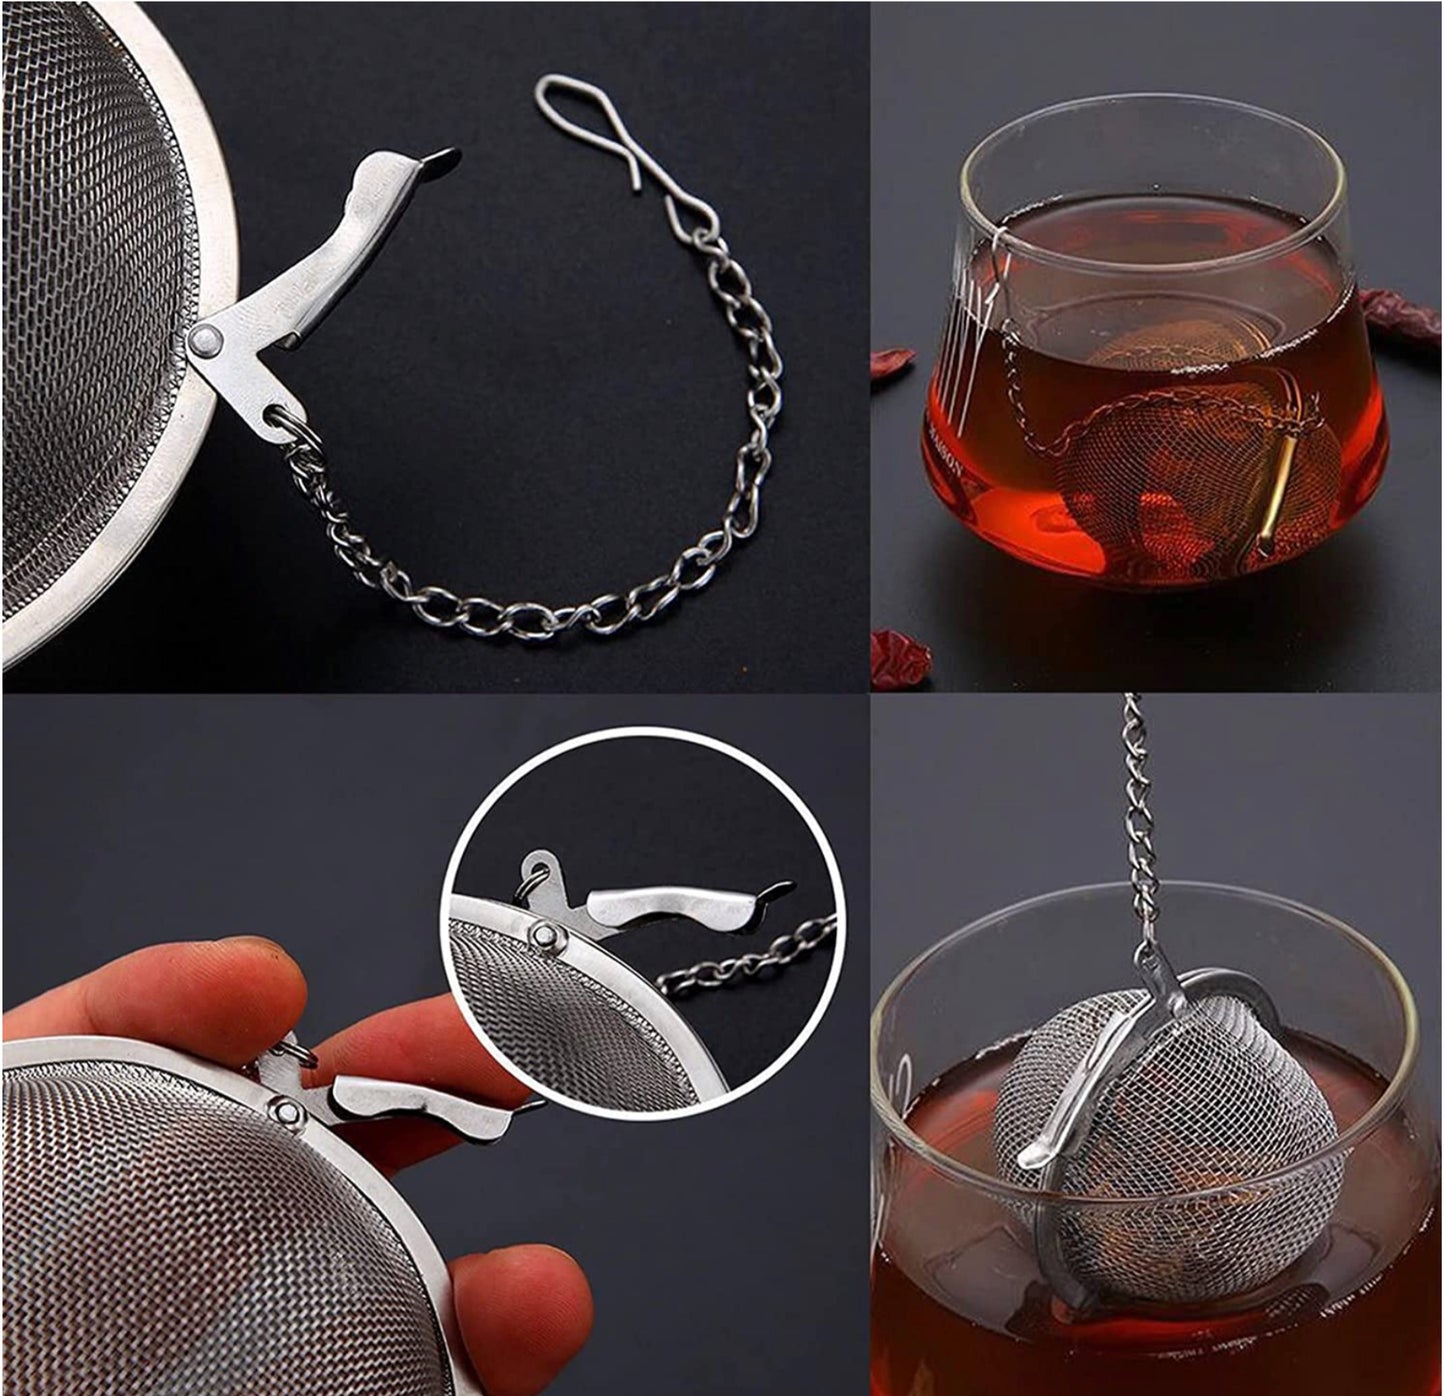 Spherical Tea Infuser